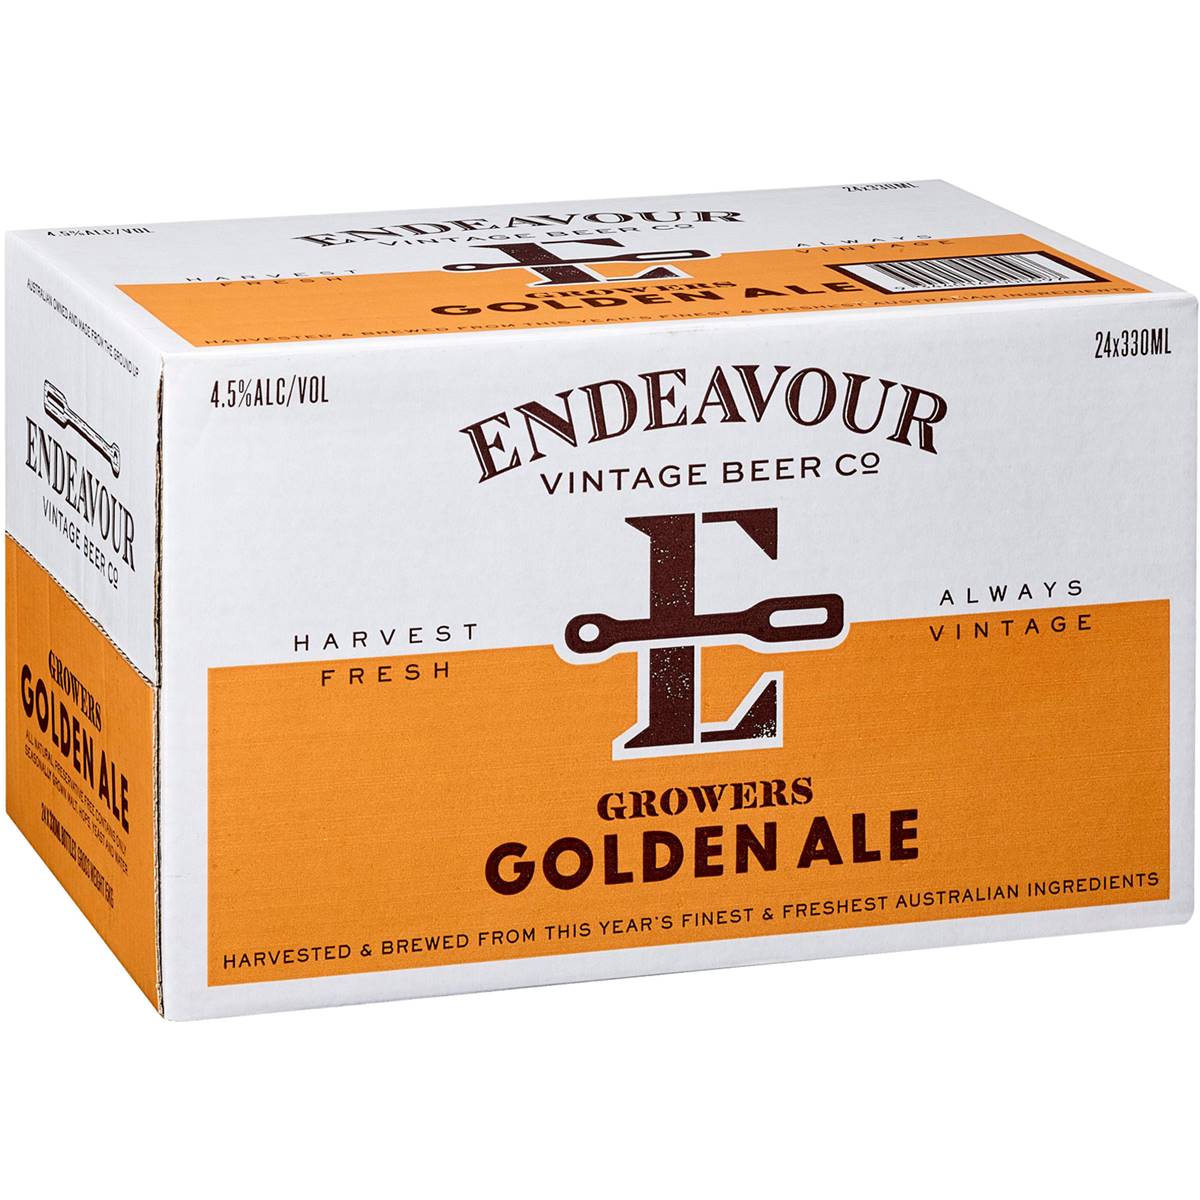 Endeavour Vintage Beer Co. Growers Golden Ale Bottles